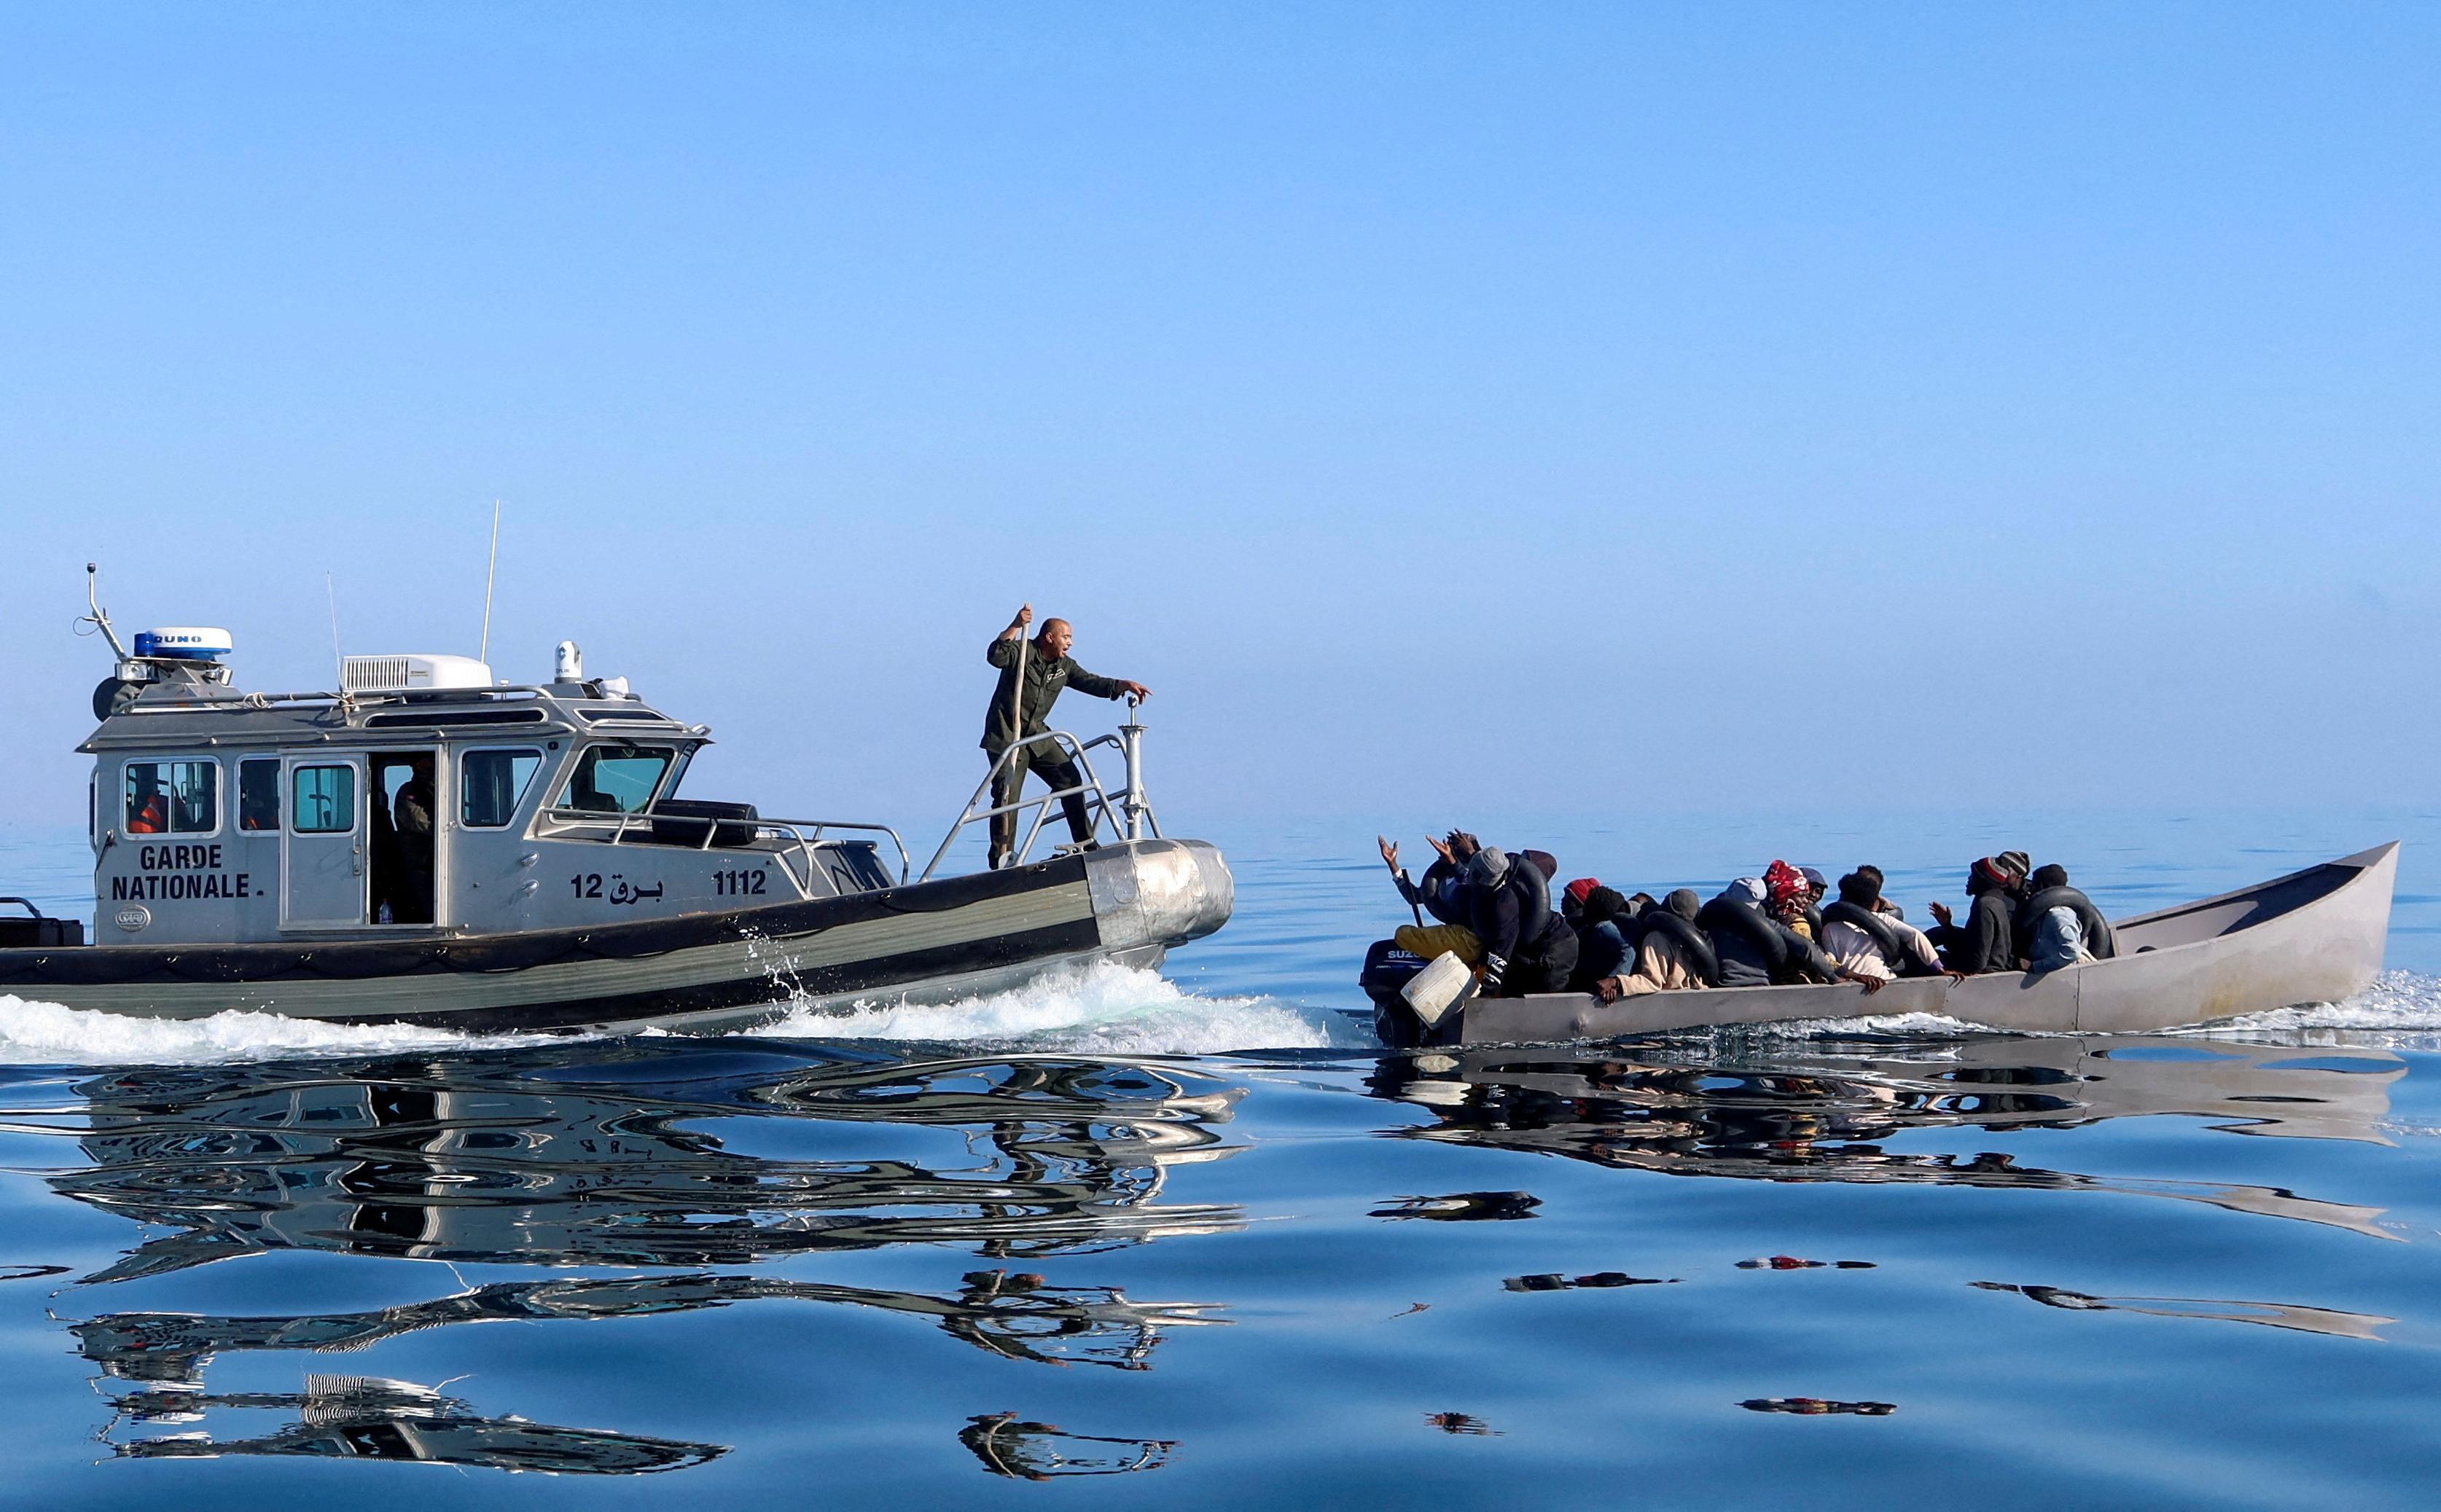 خفر السواحل التونسي يحاولون منع المهاجرين في البحر أثناء محاولتهم العبور إلى إيطاليا قبالة الساحل في صفاقس بتونس.